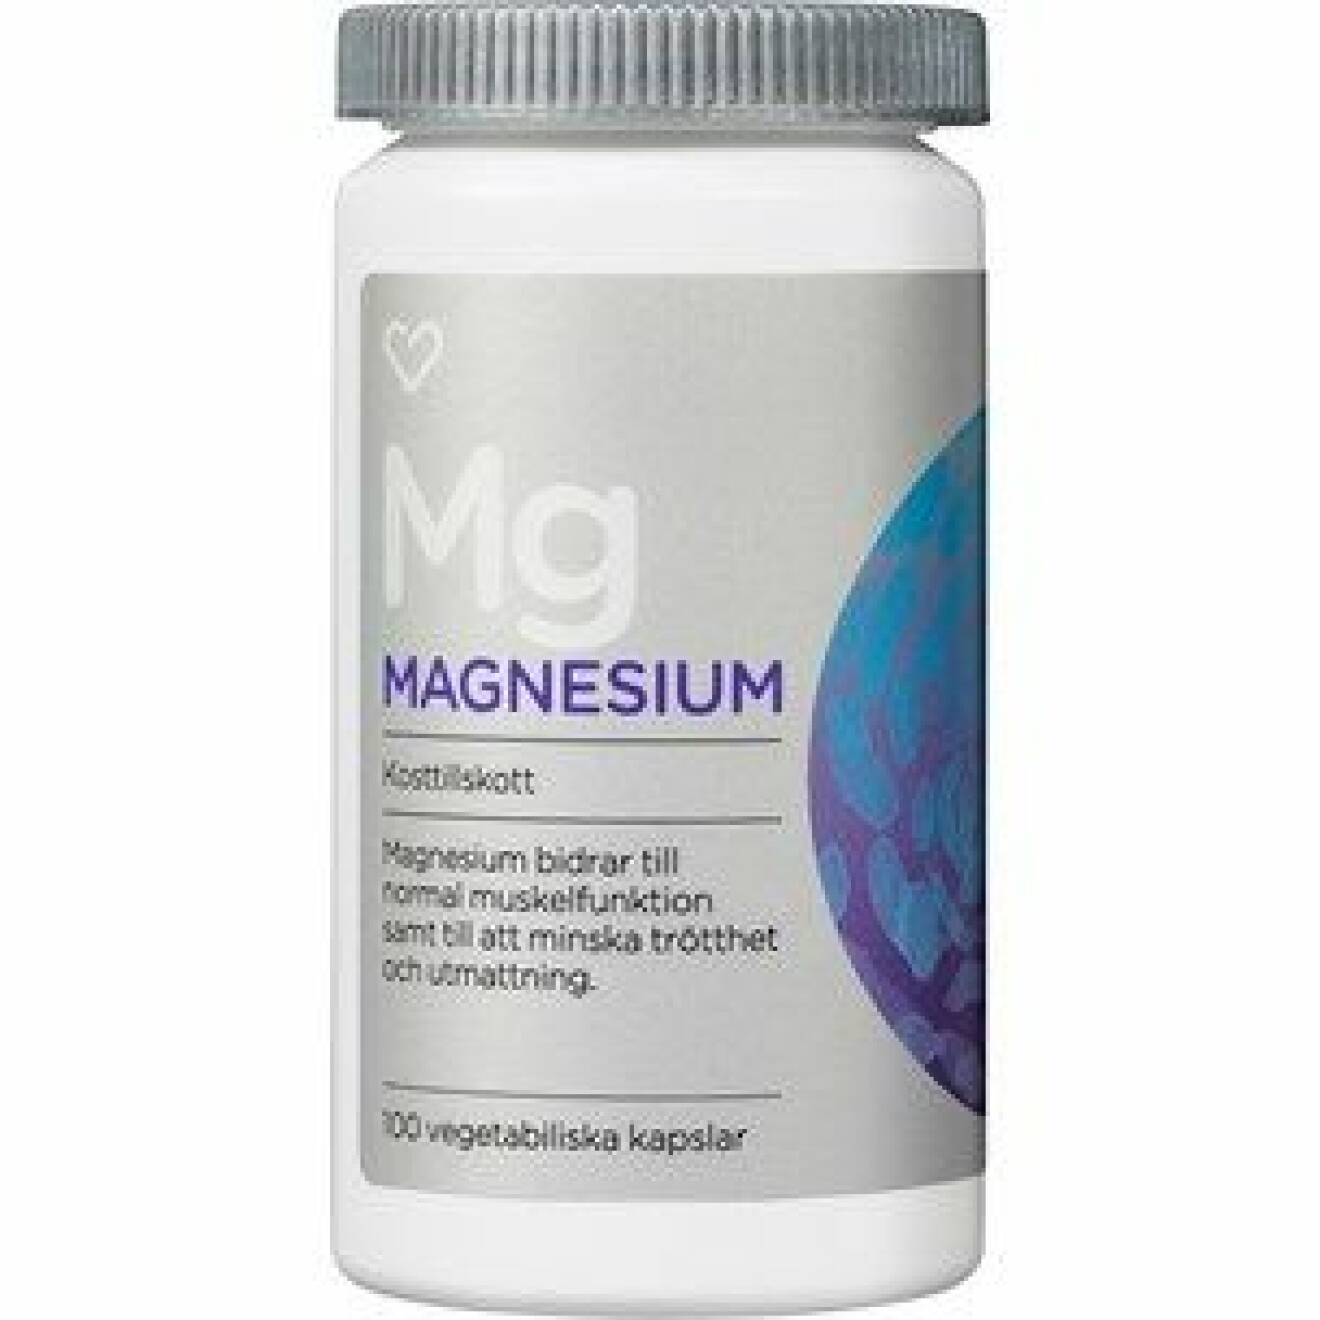 Lider du av magnesiumbrist? Testa ett tillskott